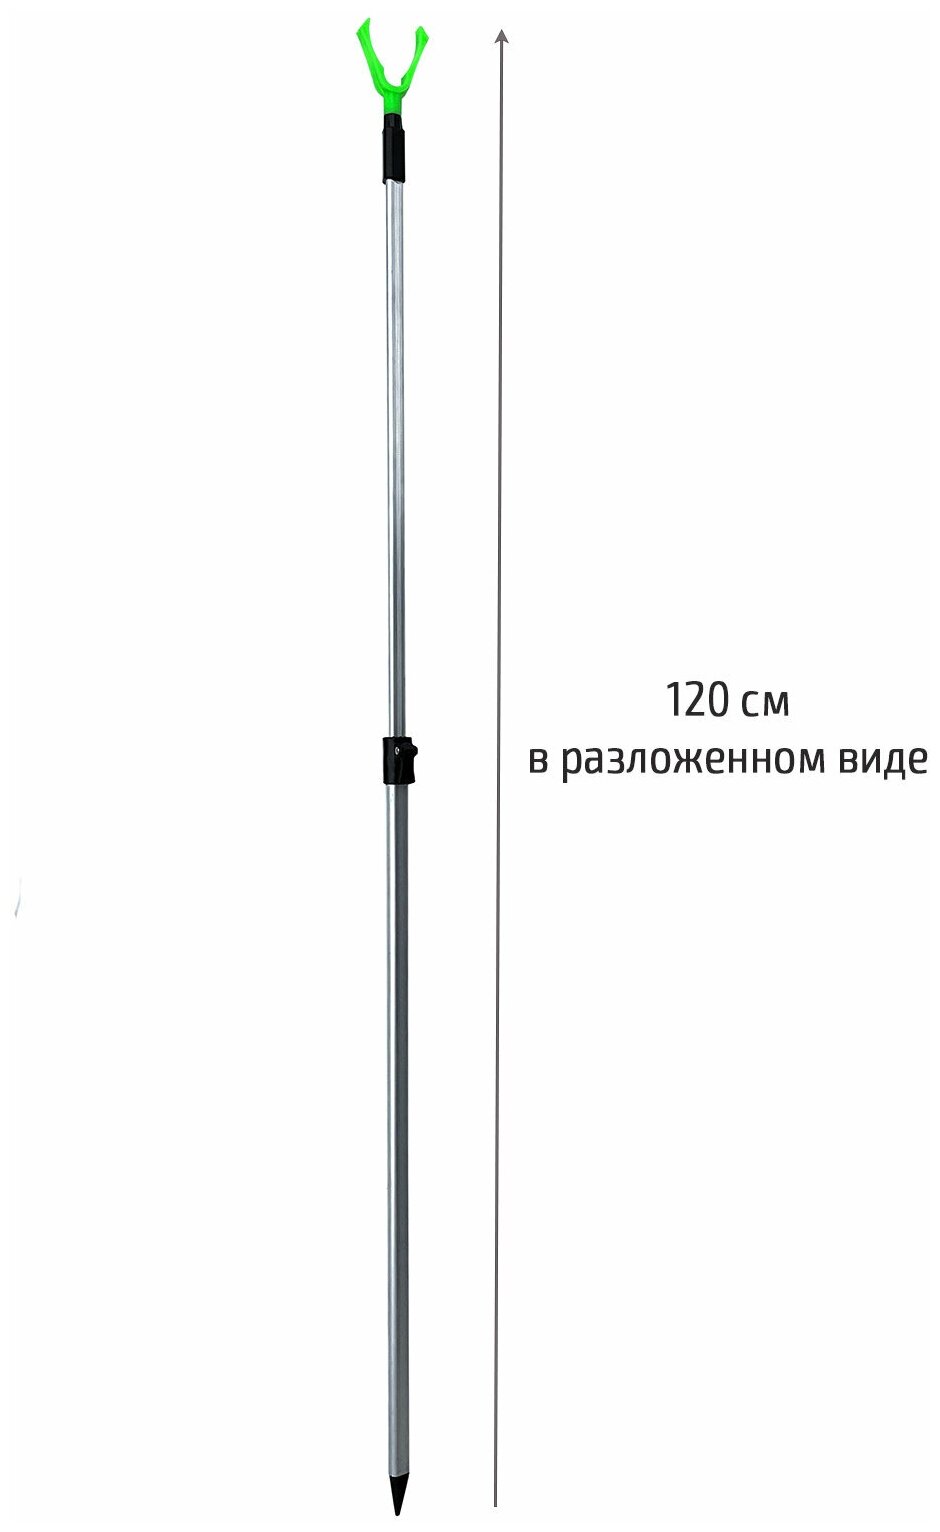 Подставка для удочки телескопическая / Держатель удилища береговой алюминиевый 12 метра 4 